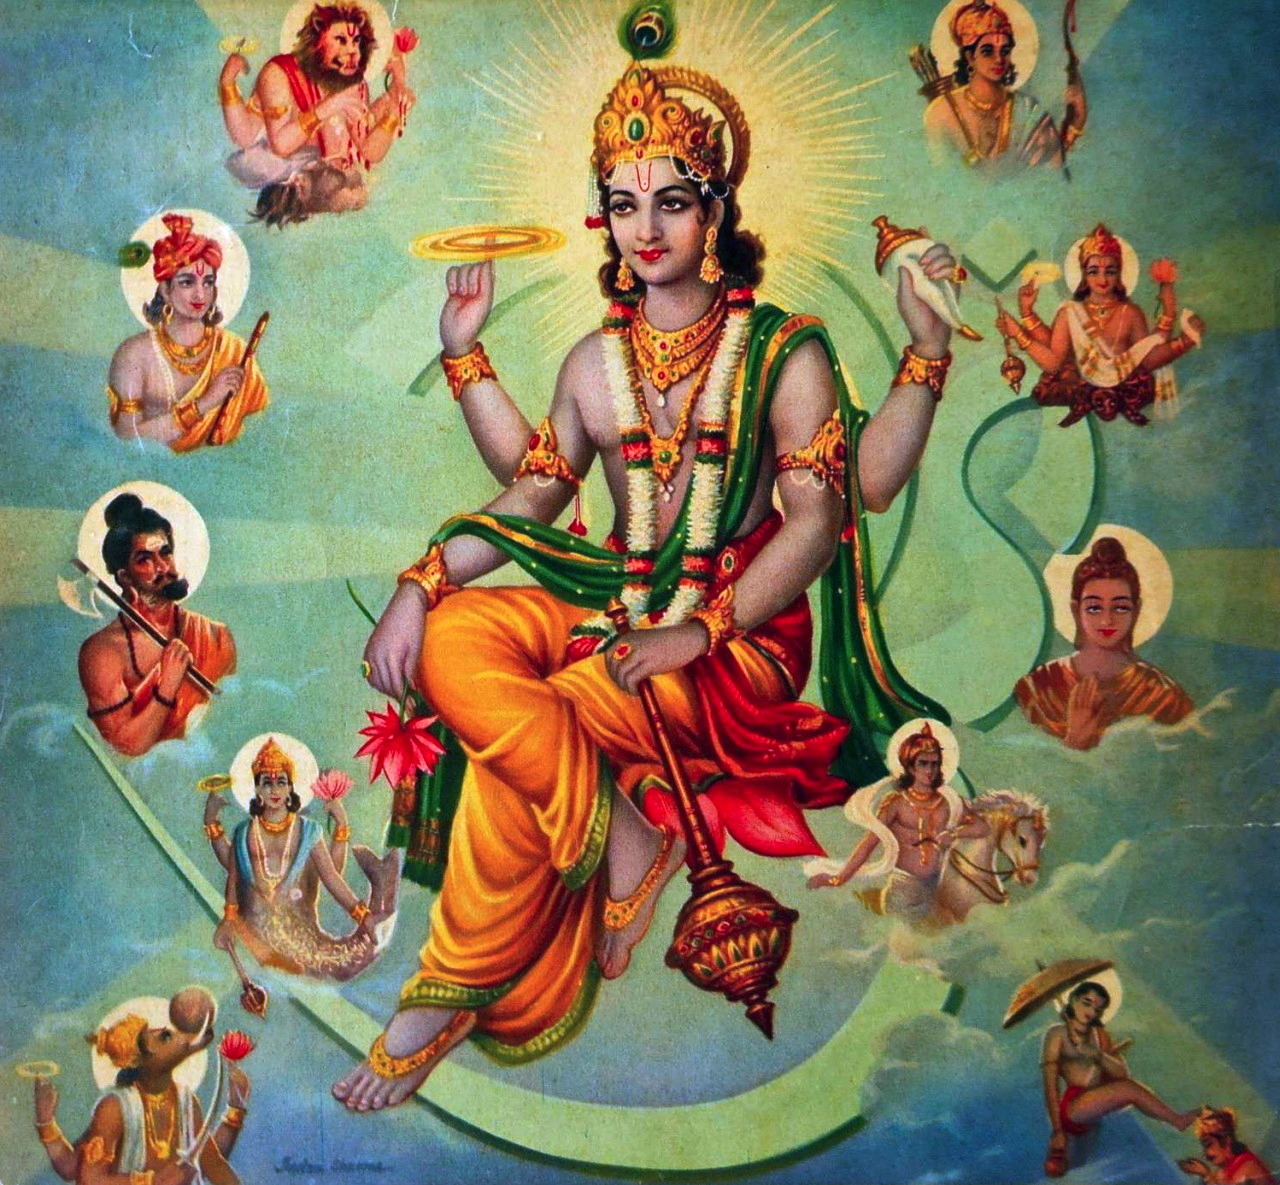 Thần Vishnu là một trong những thần Hindu được tôn sùng nhiều nhất, với tên thế hệ thứ 10 của Vishnu là một trong những biểu tượng đáng chú ý nhất trong nghệ thuật giải trí Ấn Độ. Hãy xem hình ảnh của Thần Vishnu, một tượng đồng của vẻ đẹp, tình yêu và sự phong phú.